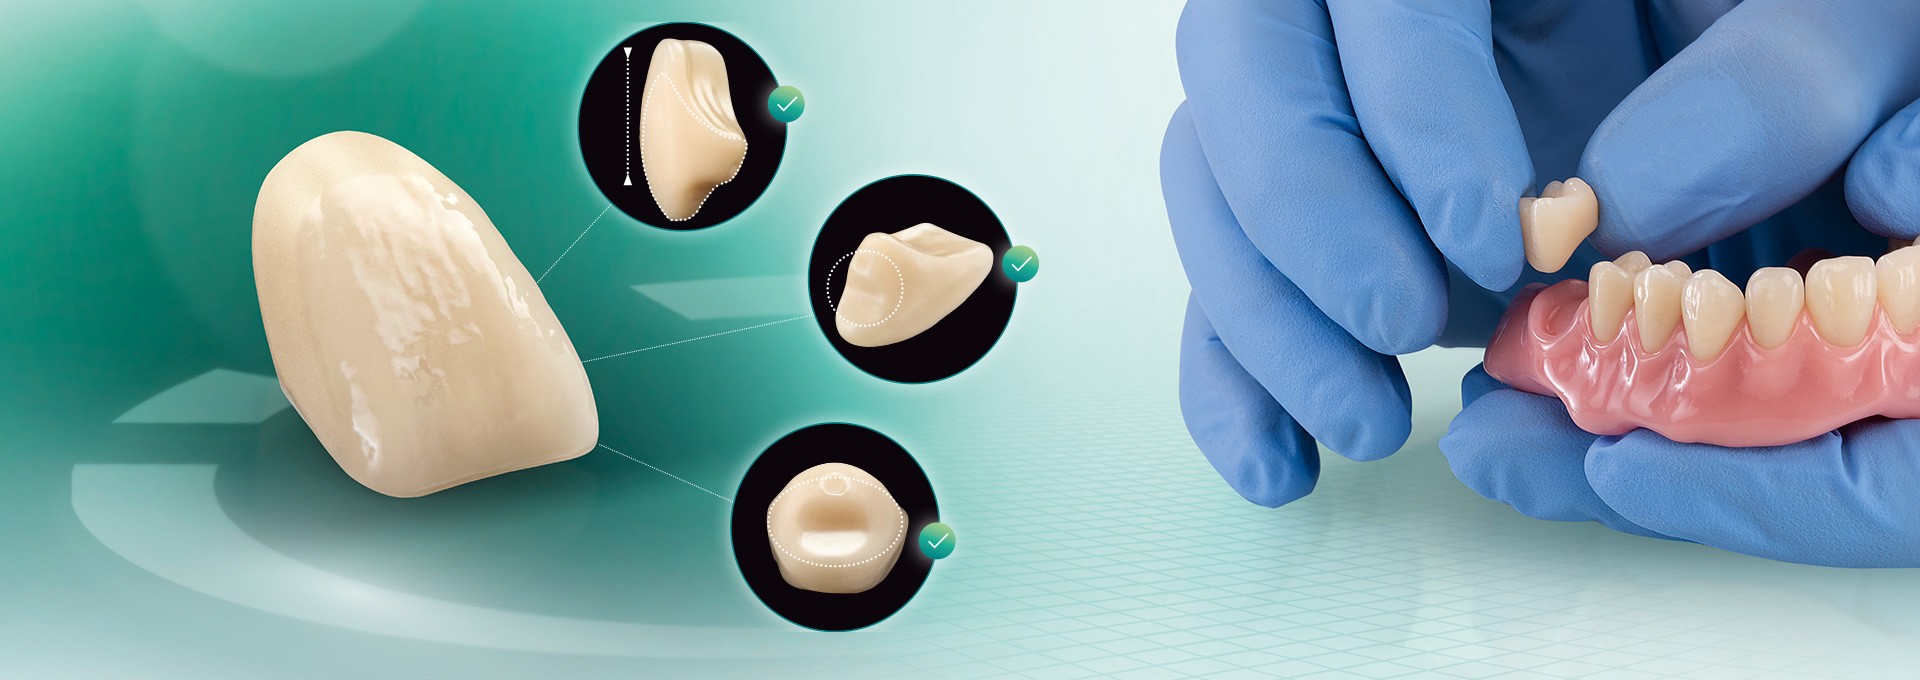 El diente VITA VIONIC VIGO desde distintas perspectivas y una prótesis confeccionada digitalmente.